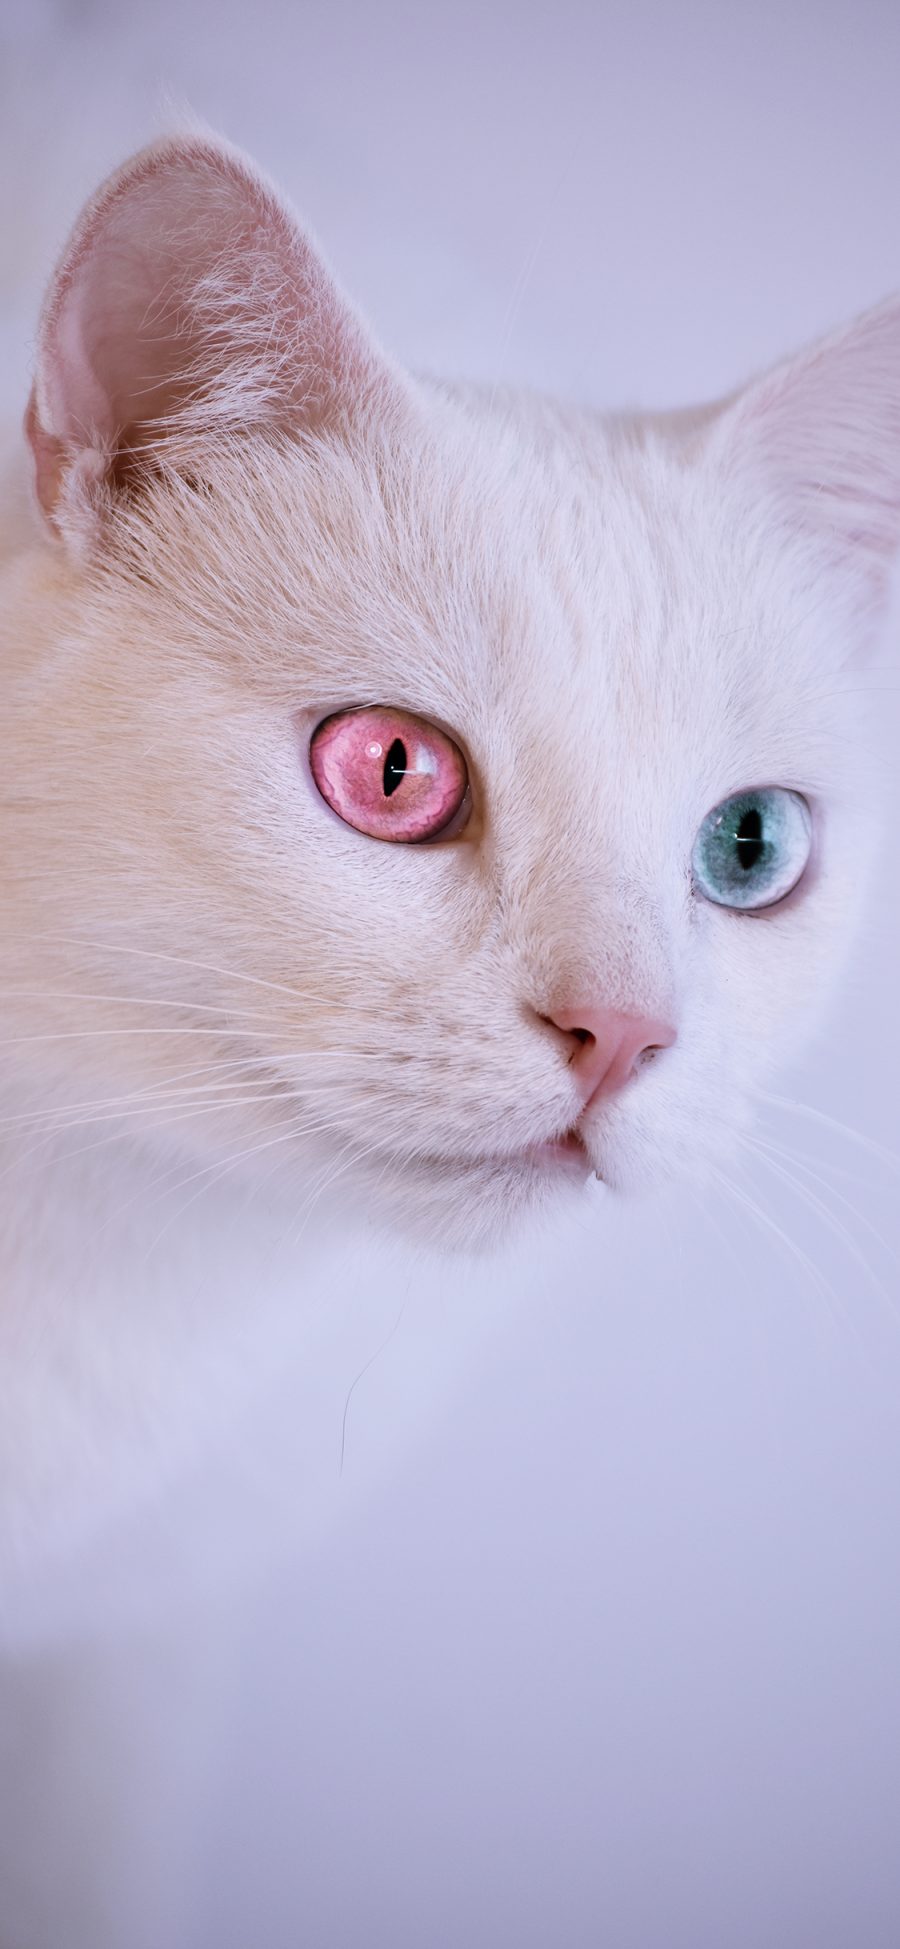 [2436×1125]猫咪 白猫 宠物 喵星人 异瞳 苹果手机壁纸图片